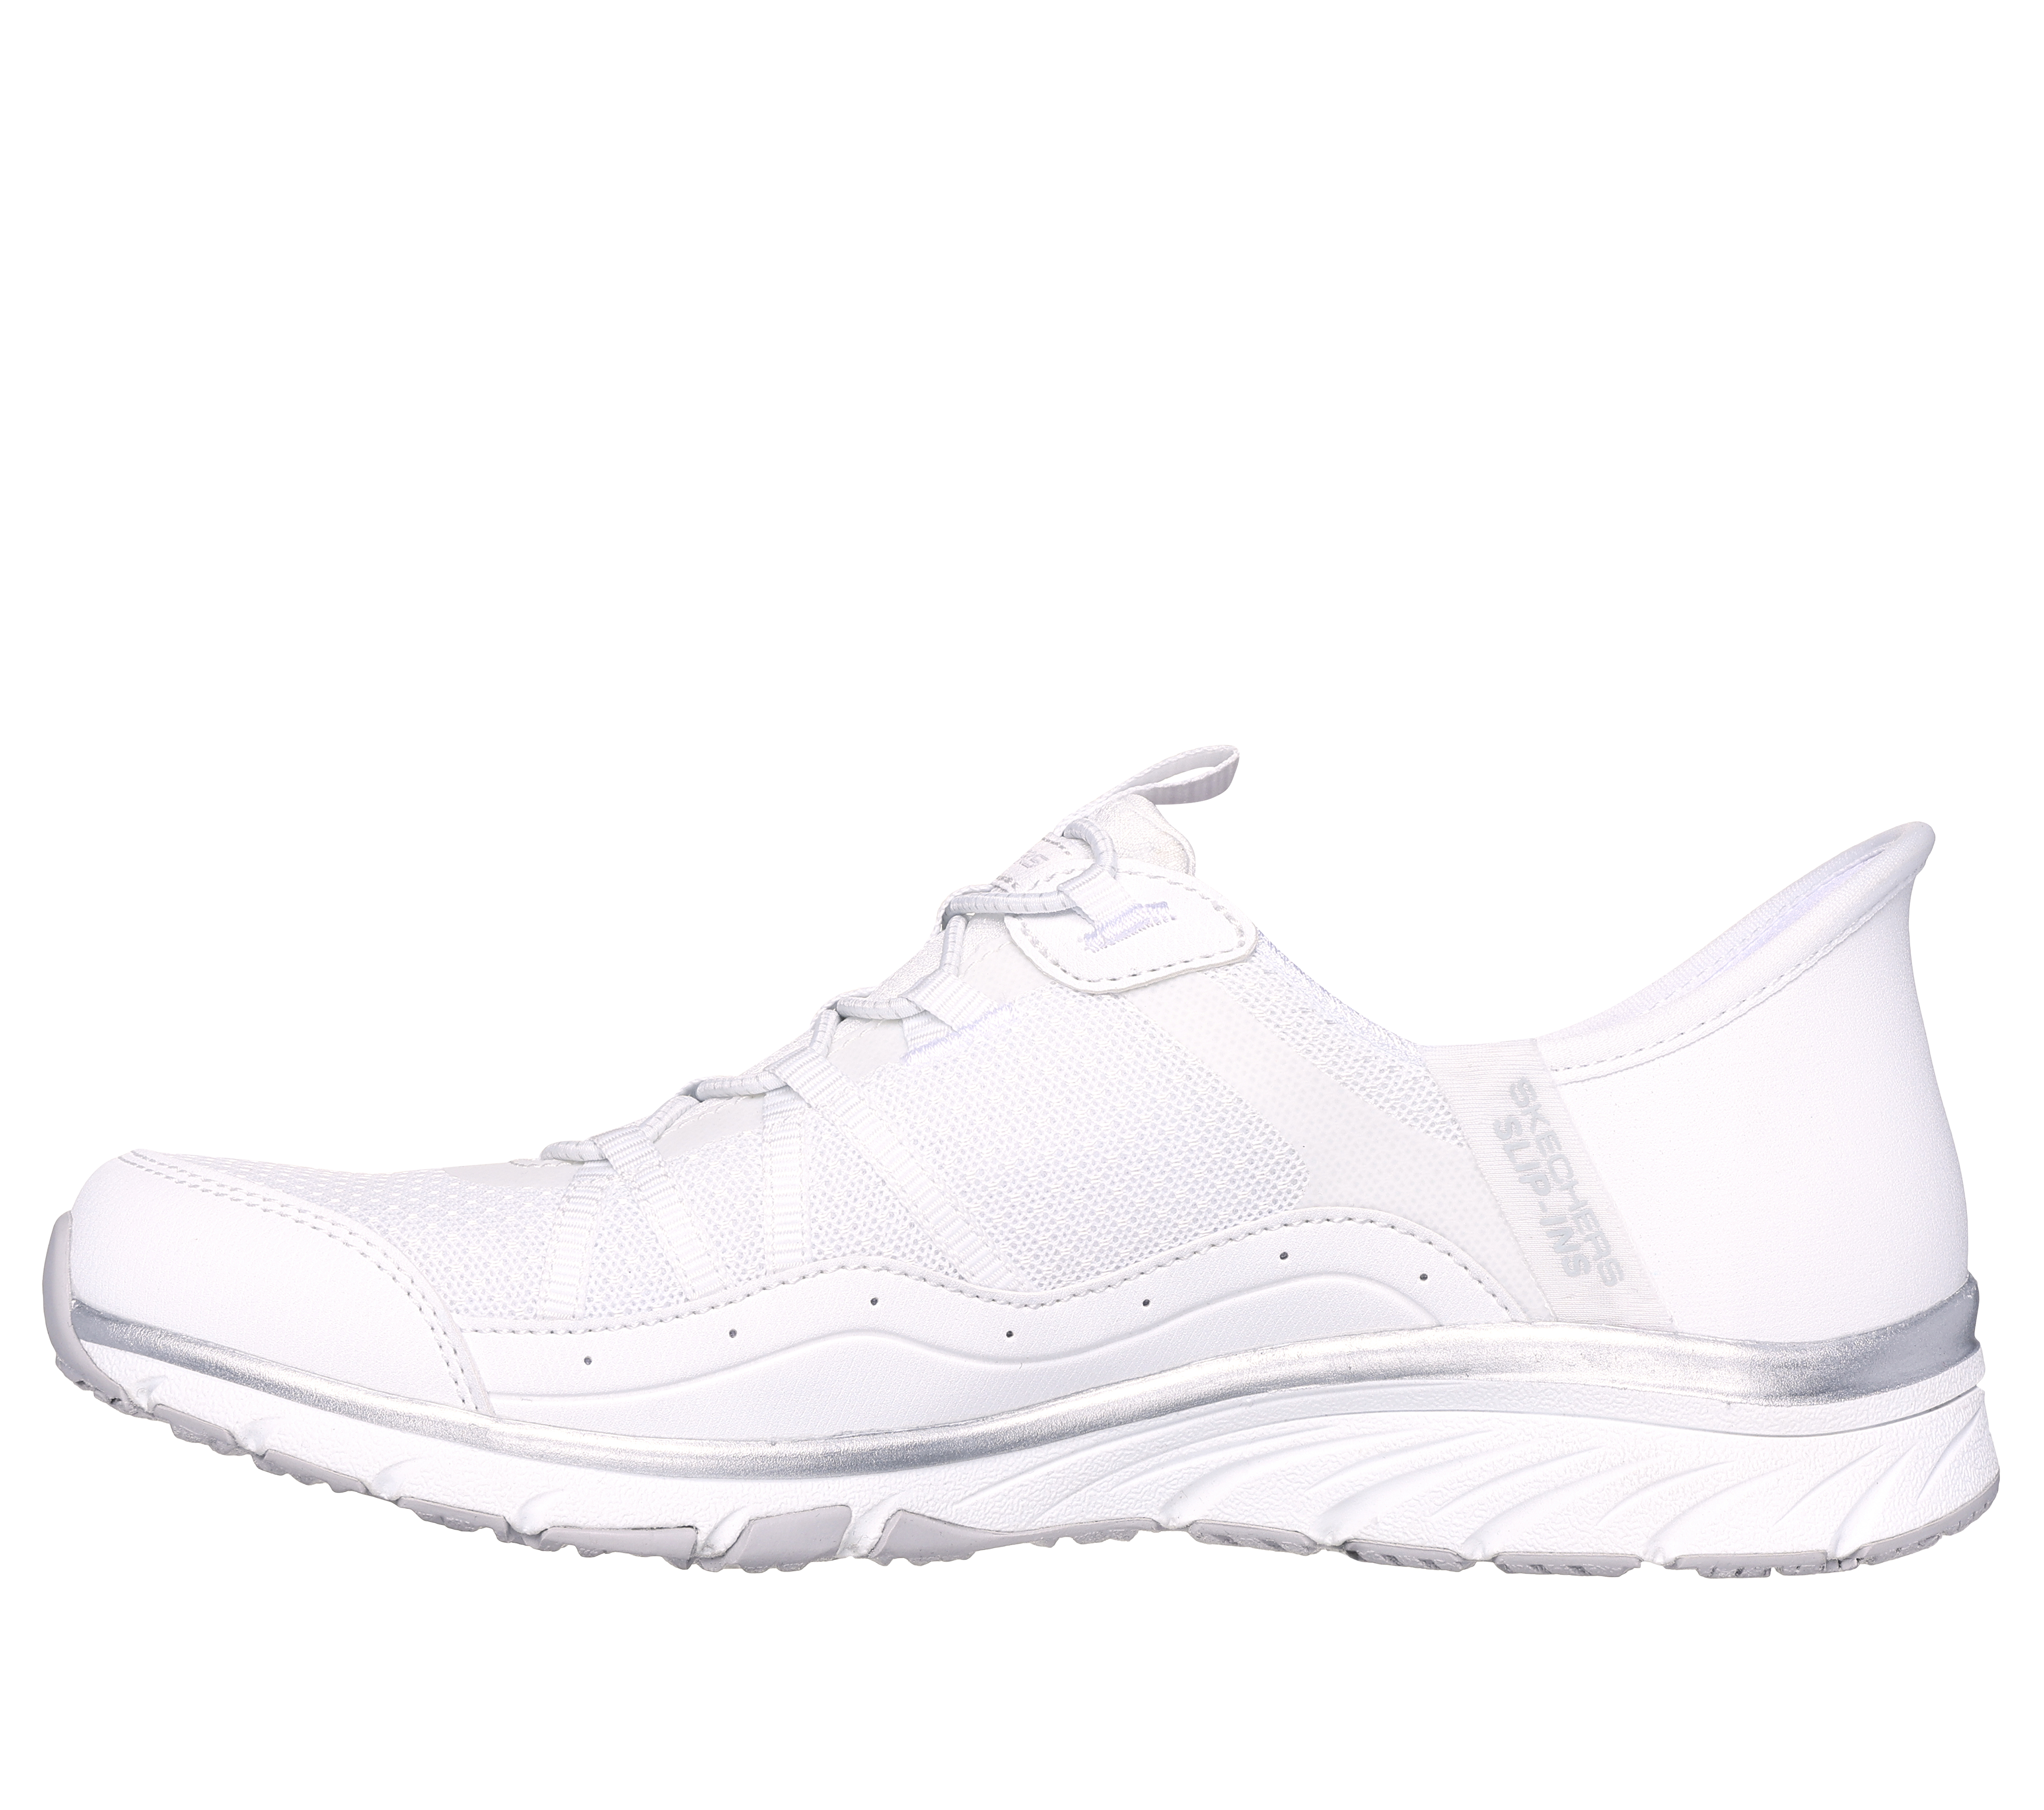 Skechers Gratis Sport Women's Wide-Width Casual Shoe White